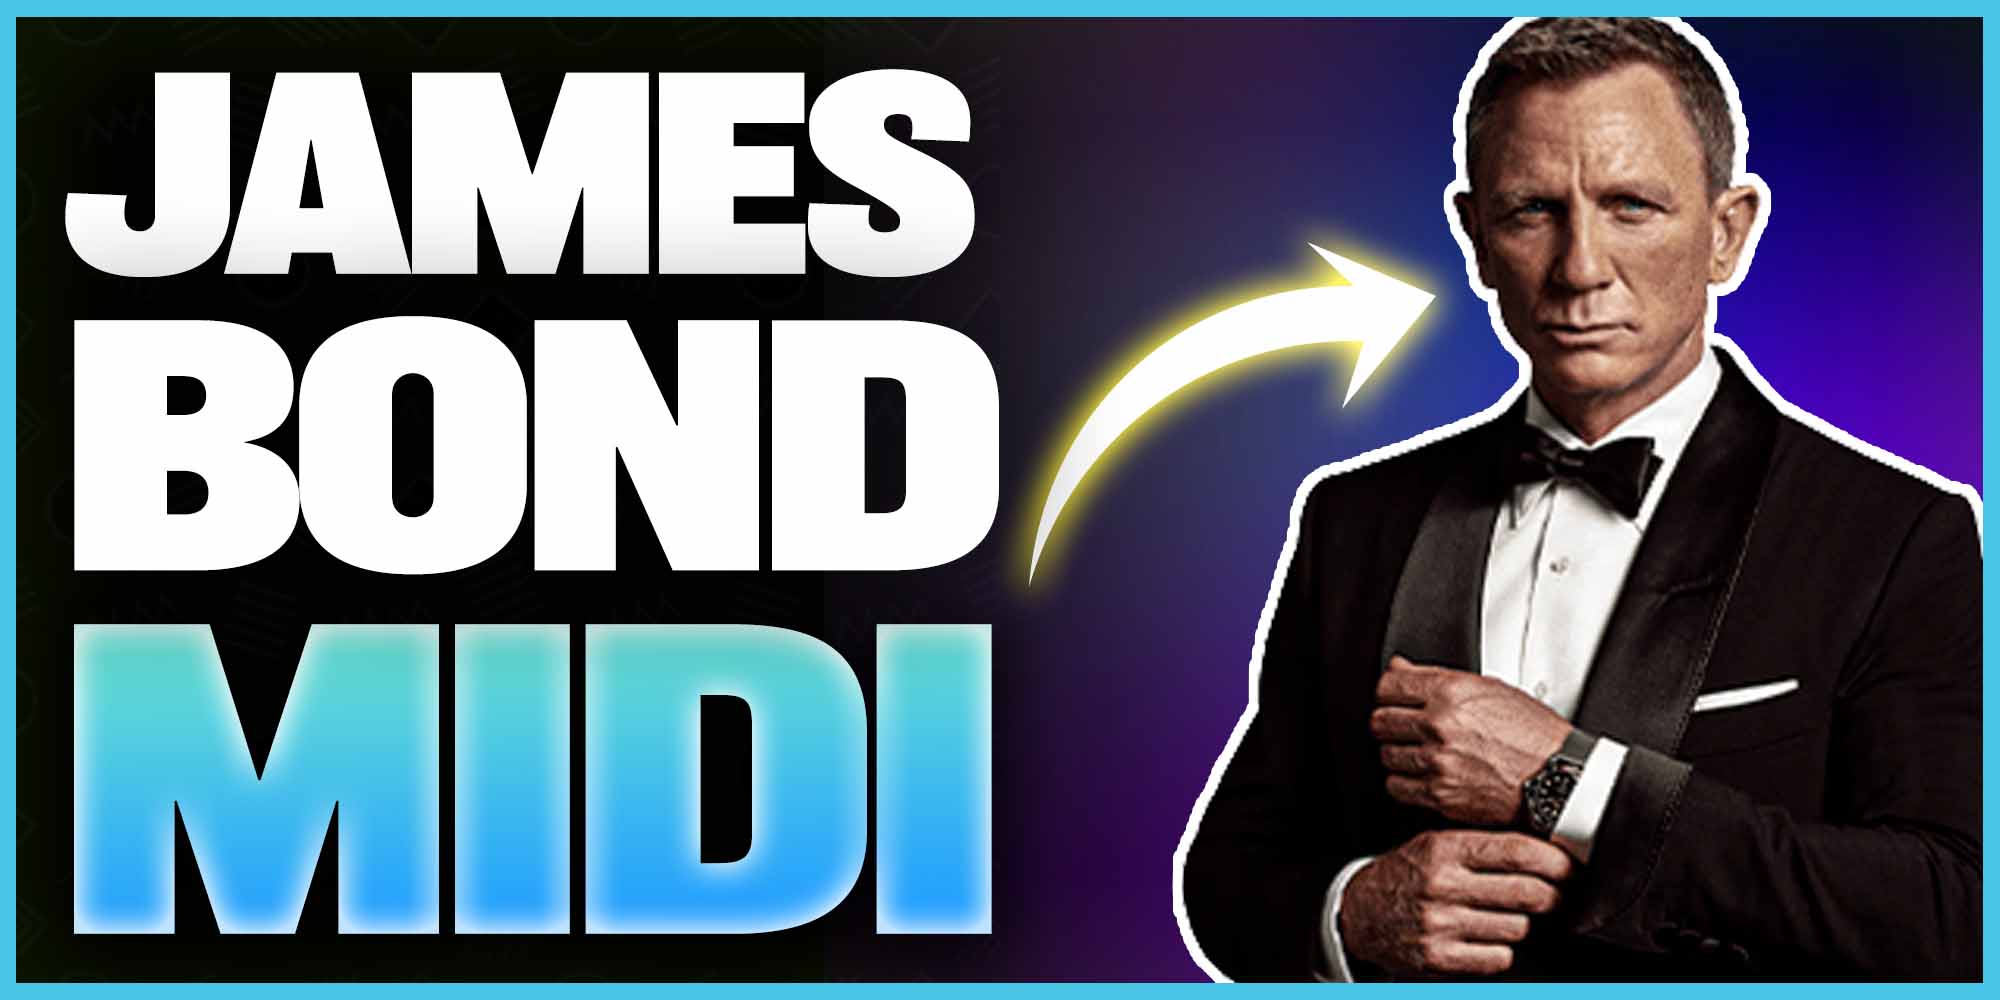 James Bond MIDI File